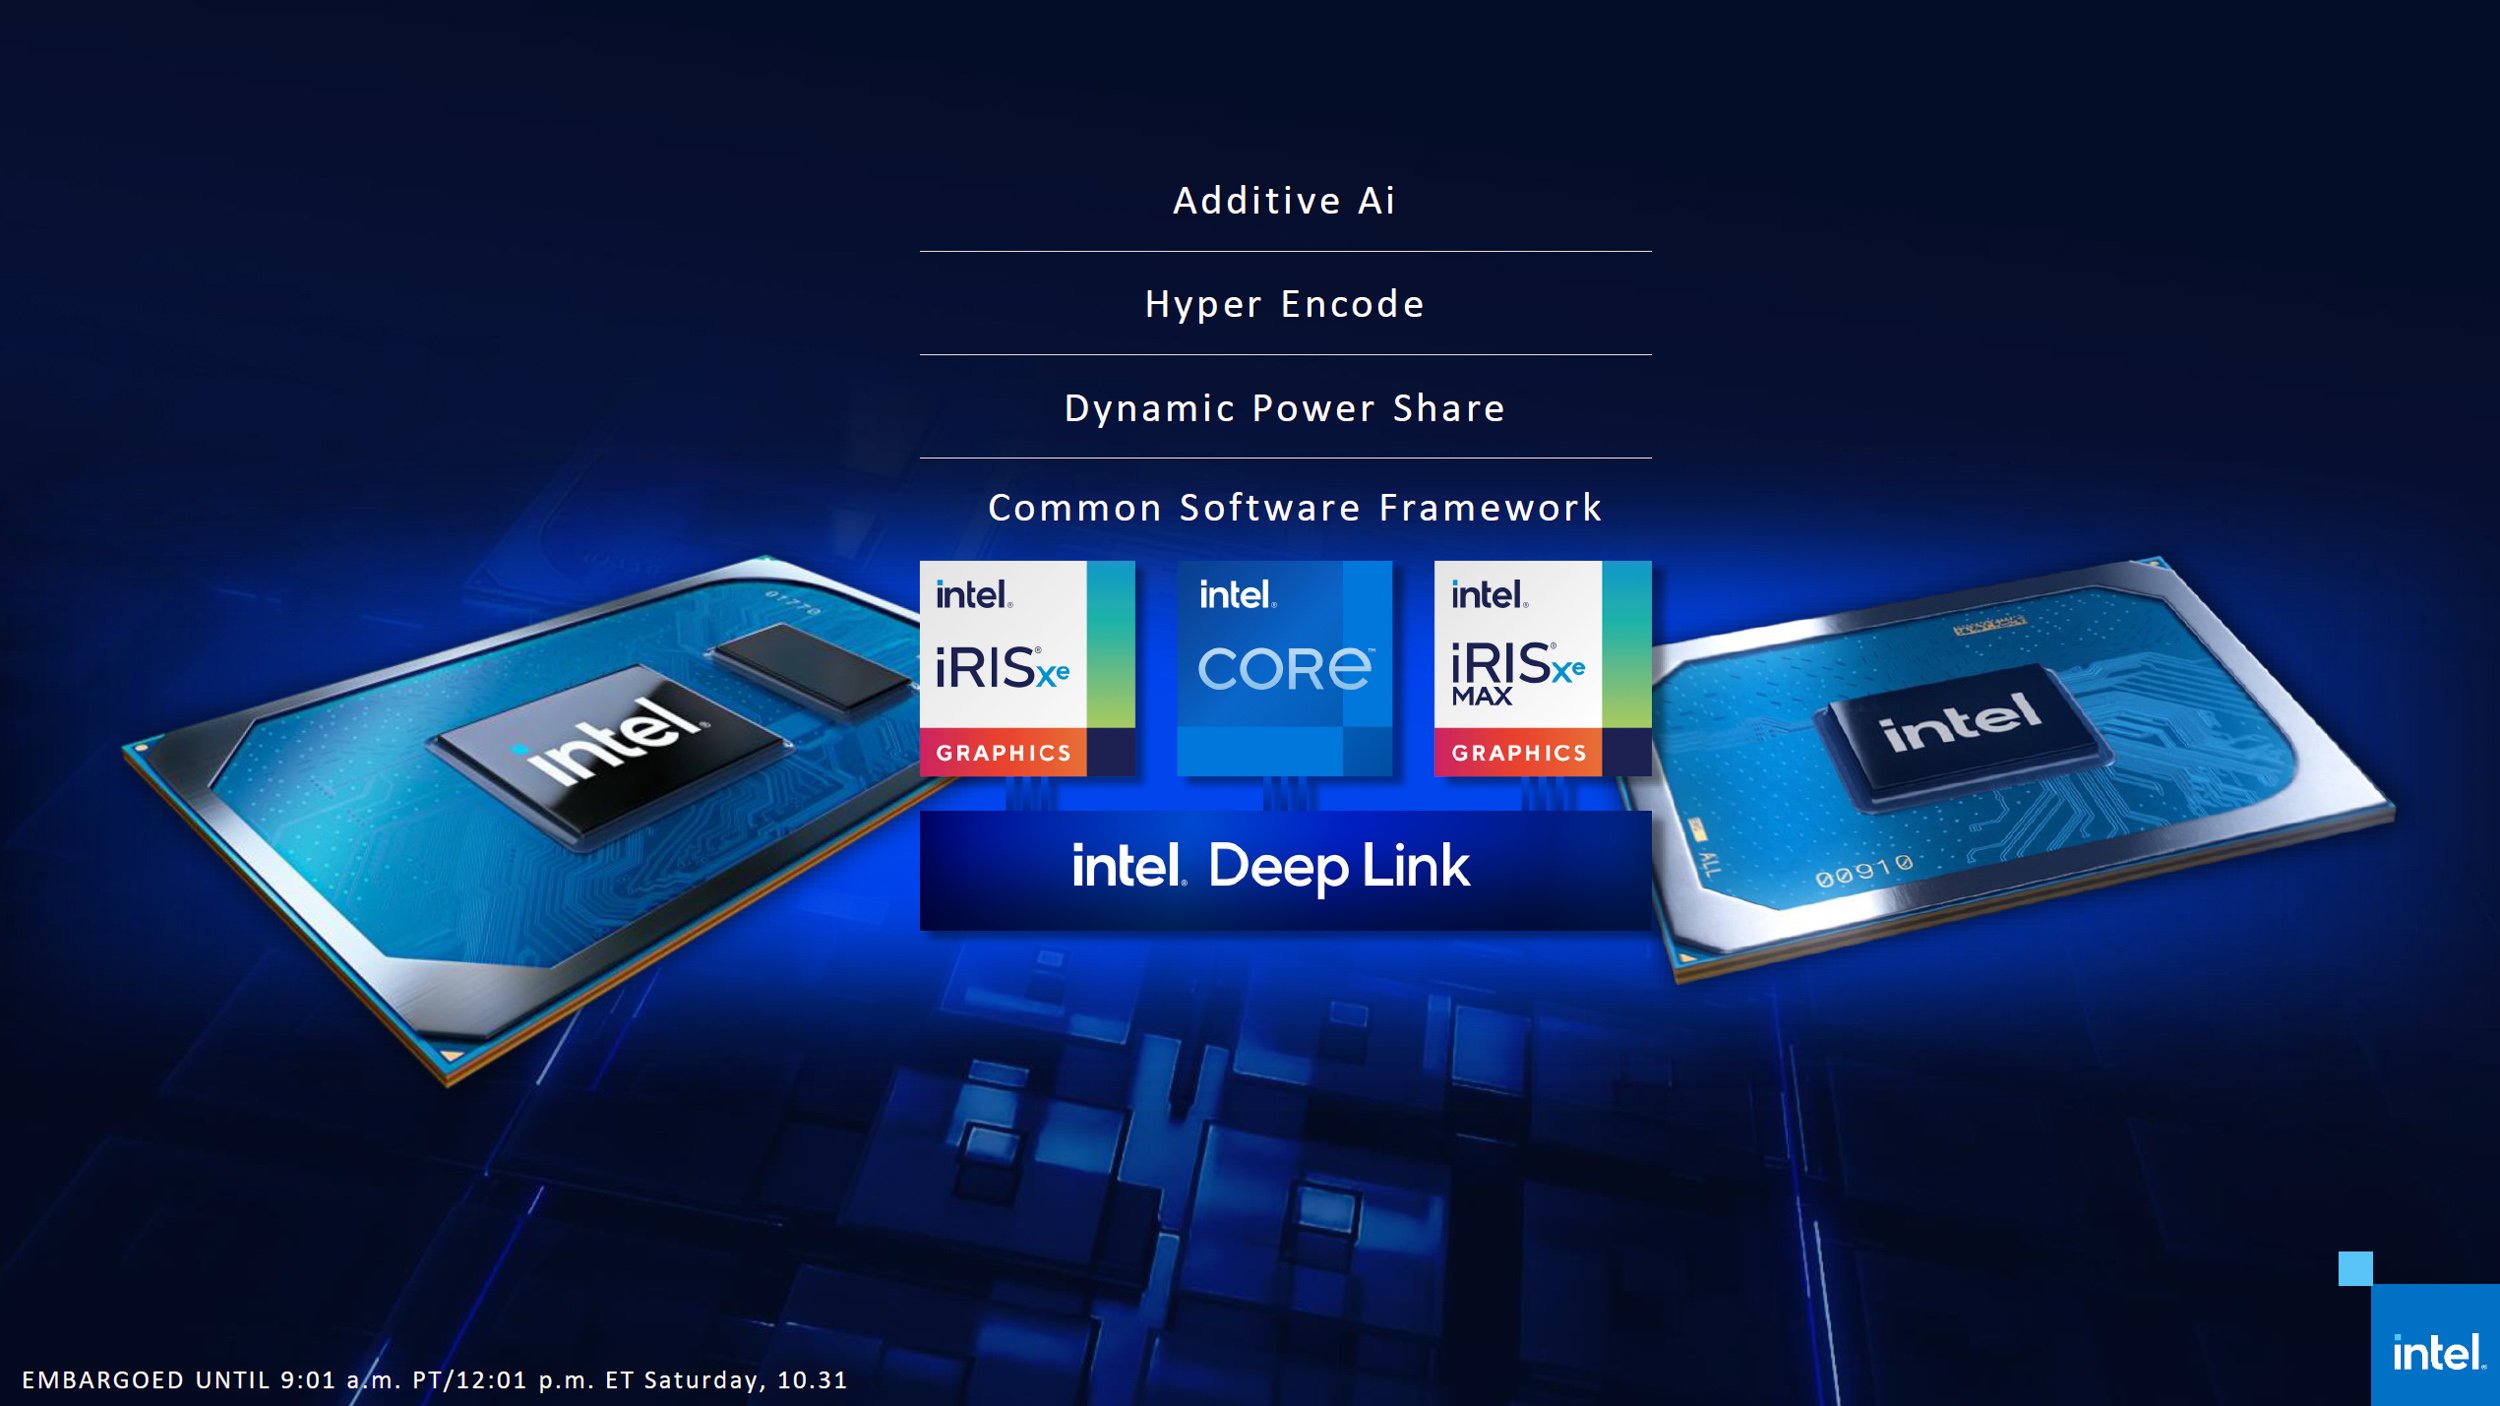 Graphics xe 24eus. Intel Iris xe Graphics видеокарта. Intel Iris xe Graphics 96. Intel Core i7 Iris xe Graphics. Iris xe Max 4 ГБ.